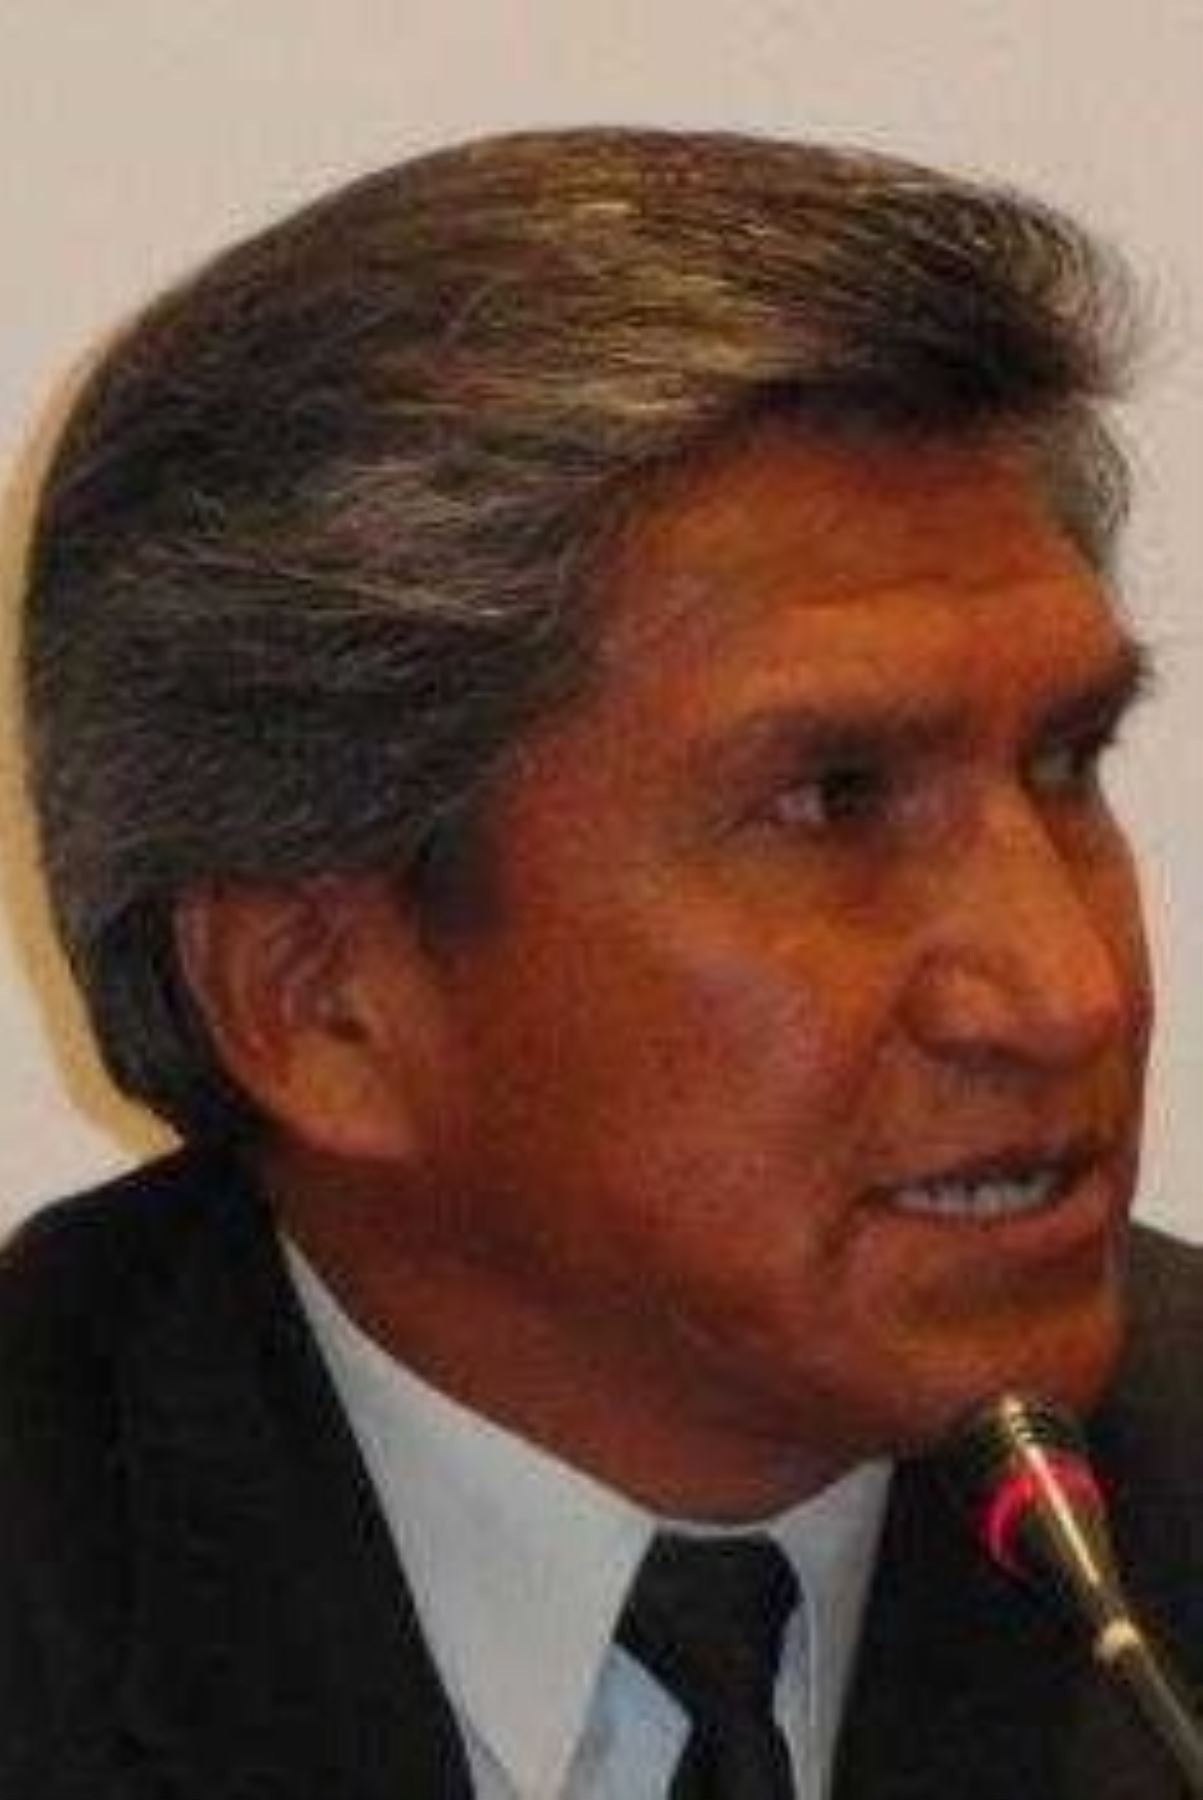 El Cuarto Juzgado Penal Unipersonal de Cusco sentenció a cuatro años de cárcel al ex alcalde del distrito cusqueño de San Jerónimo, Policarpo Ccorimanya Zúñiga, por el delito de colusión agravada, negociación incompatible y aprovechamiento indebido de cargo en su gestión 2011-2014.